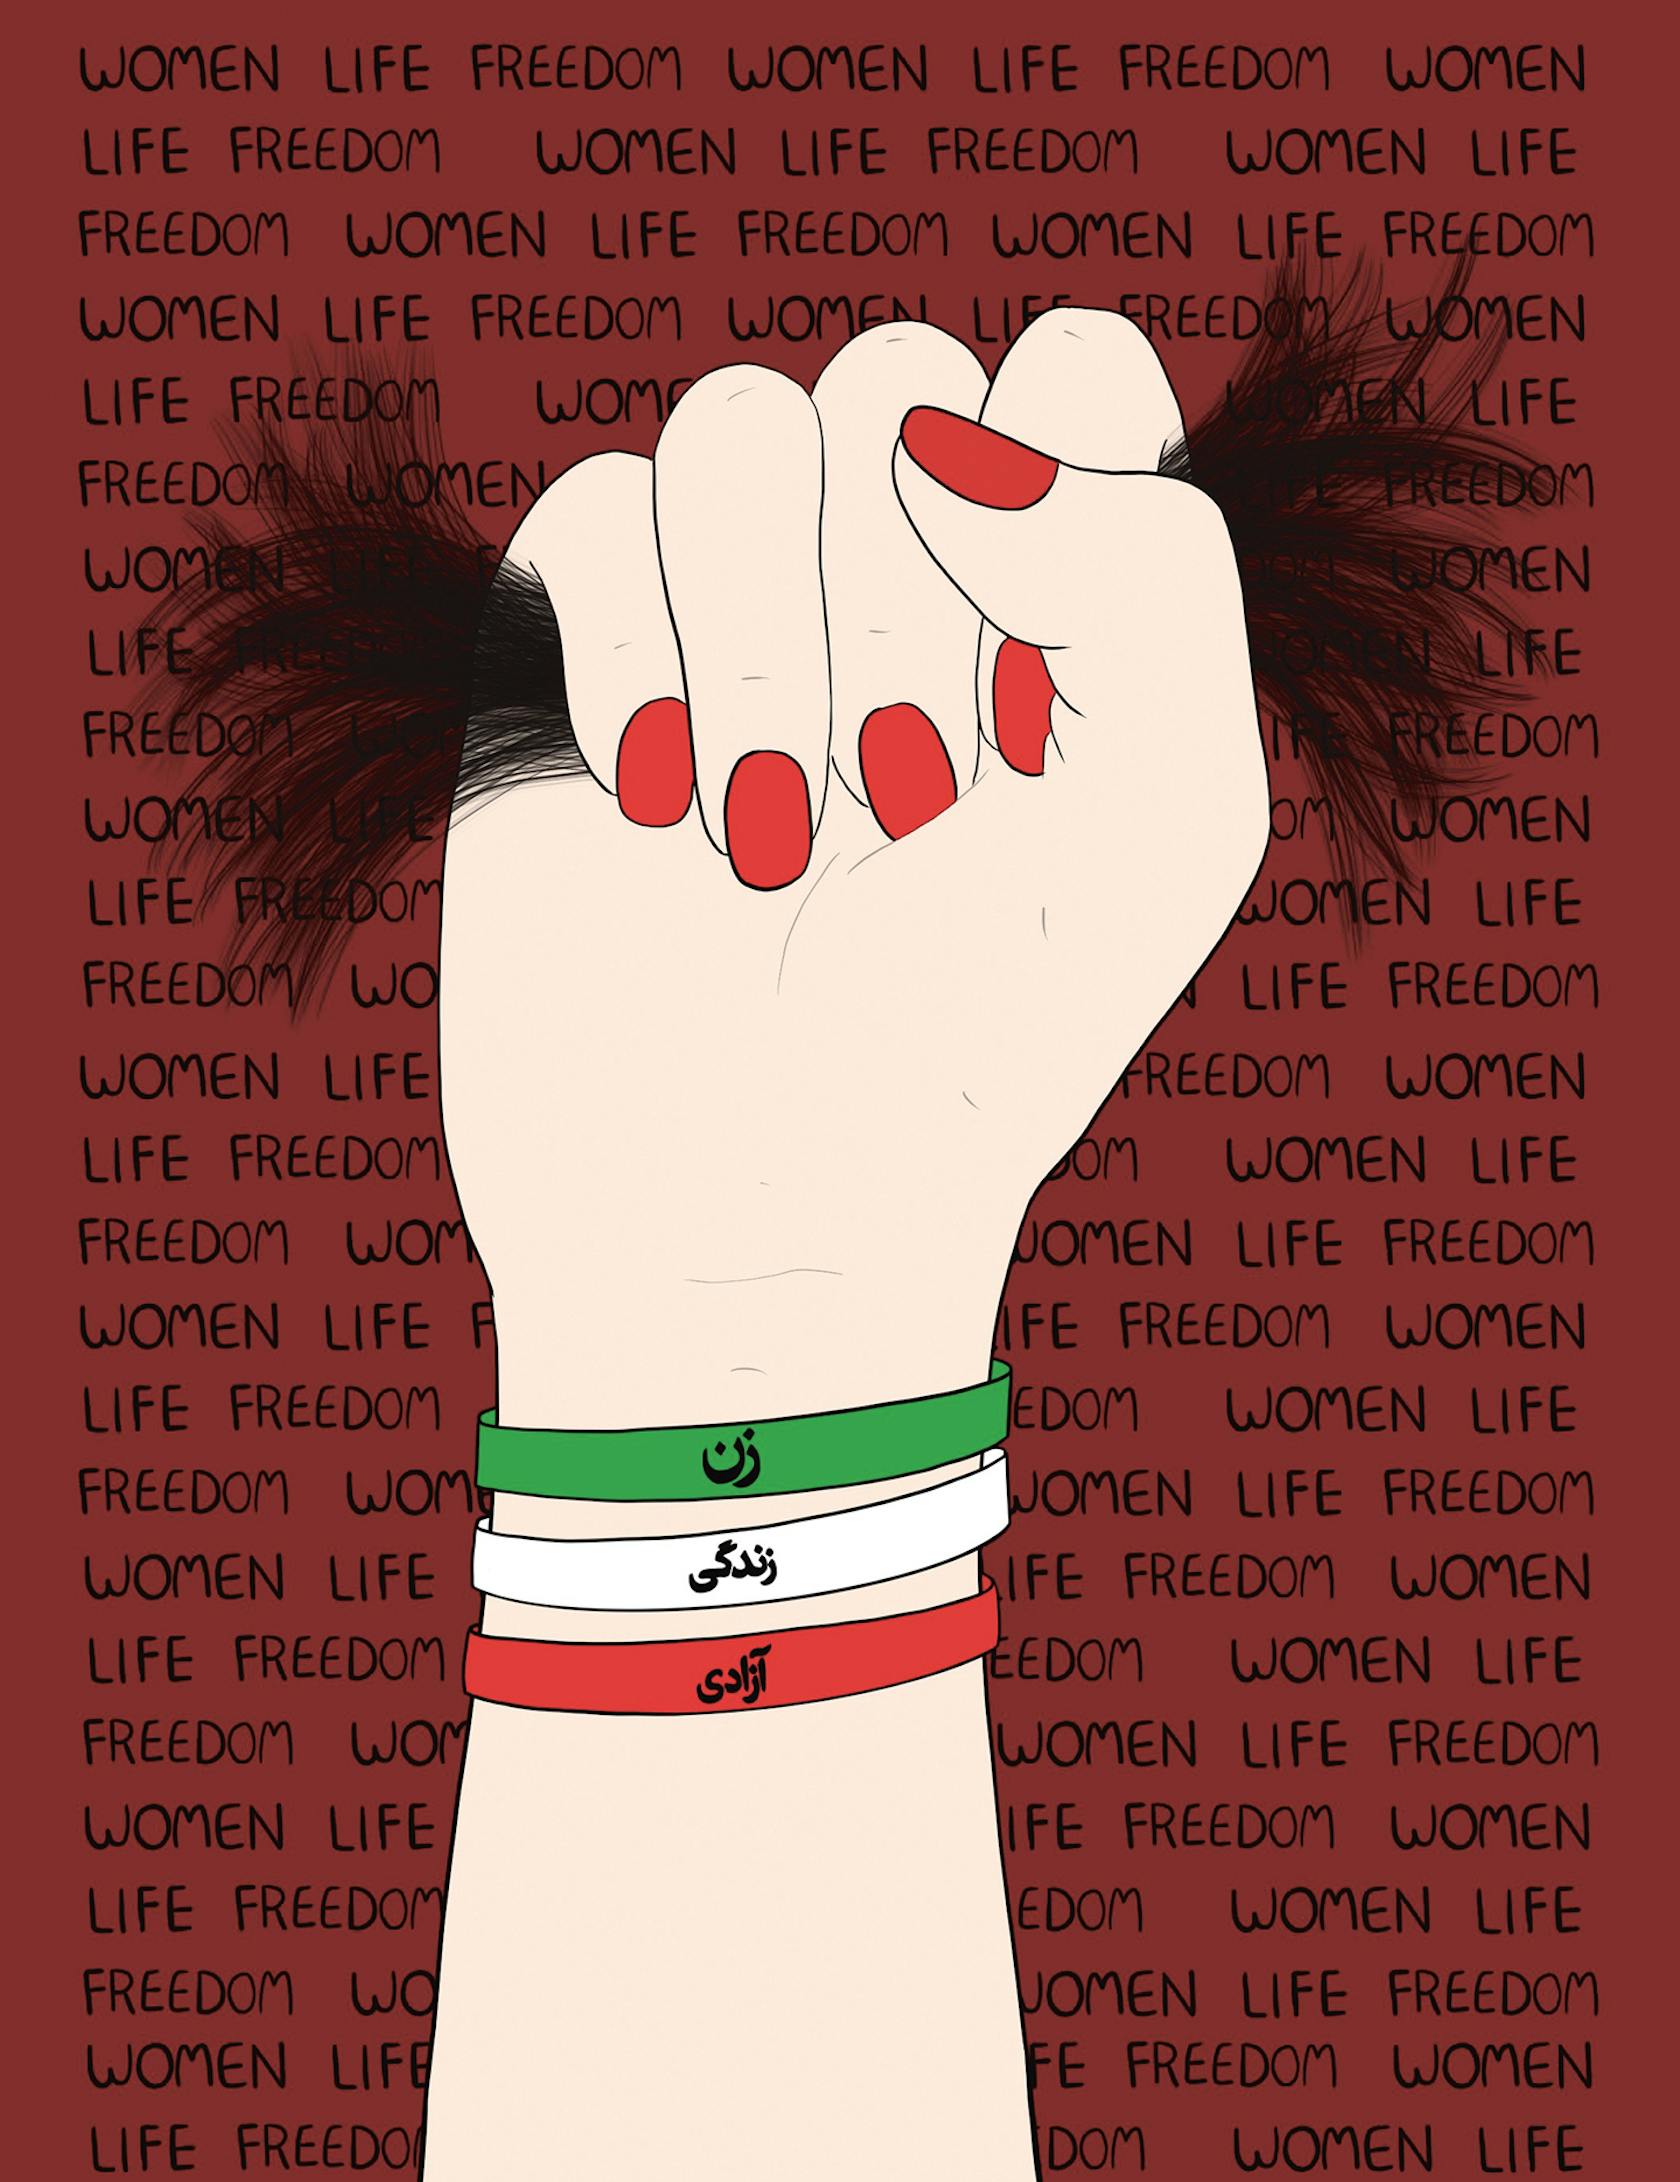 Women Life Freedom Revolution (2022) van de Iraanse illustrator Roshi Rouzbehani. Zij woont sinds 2011 in het Verenigd Koninkrijk. Haar illustraties zijn onder andere gepubliceerd in The New Yorker, The Guardian en Die Zeit.